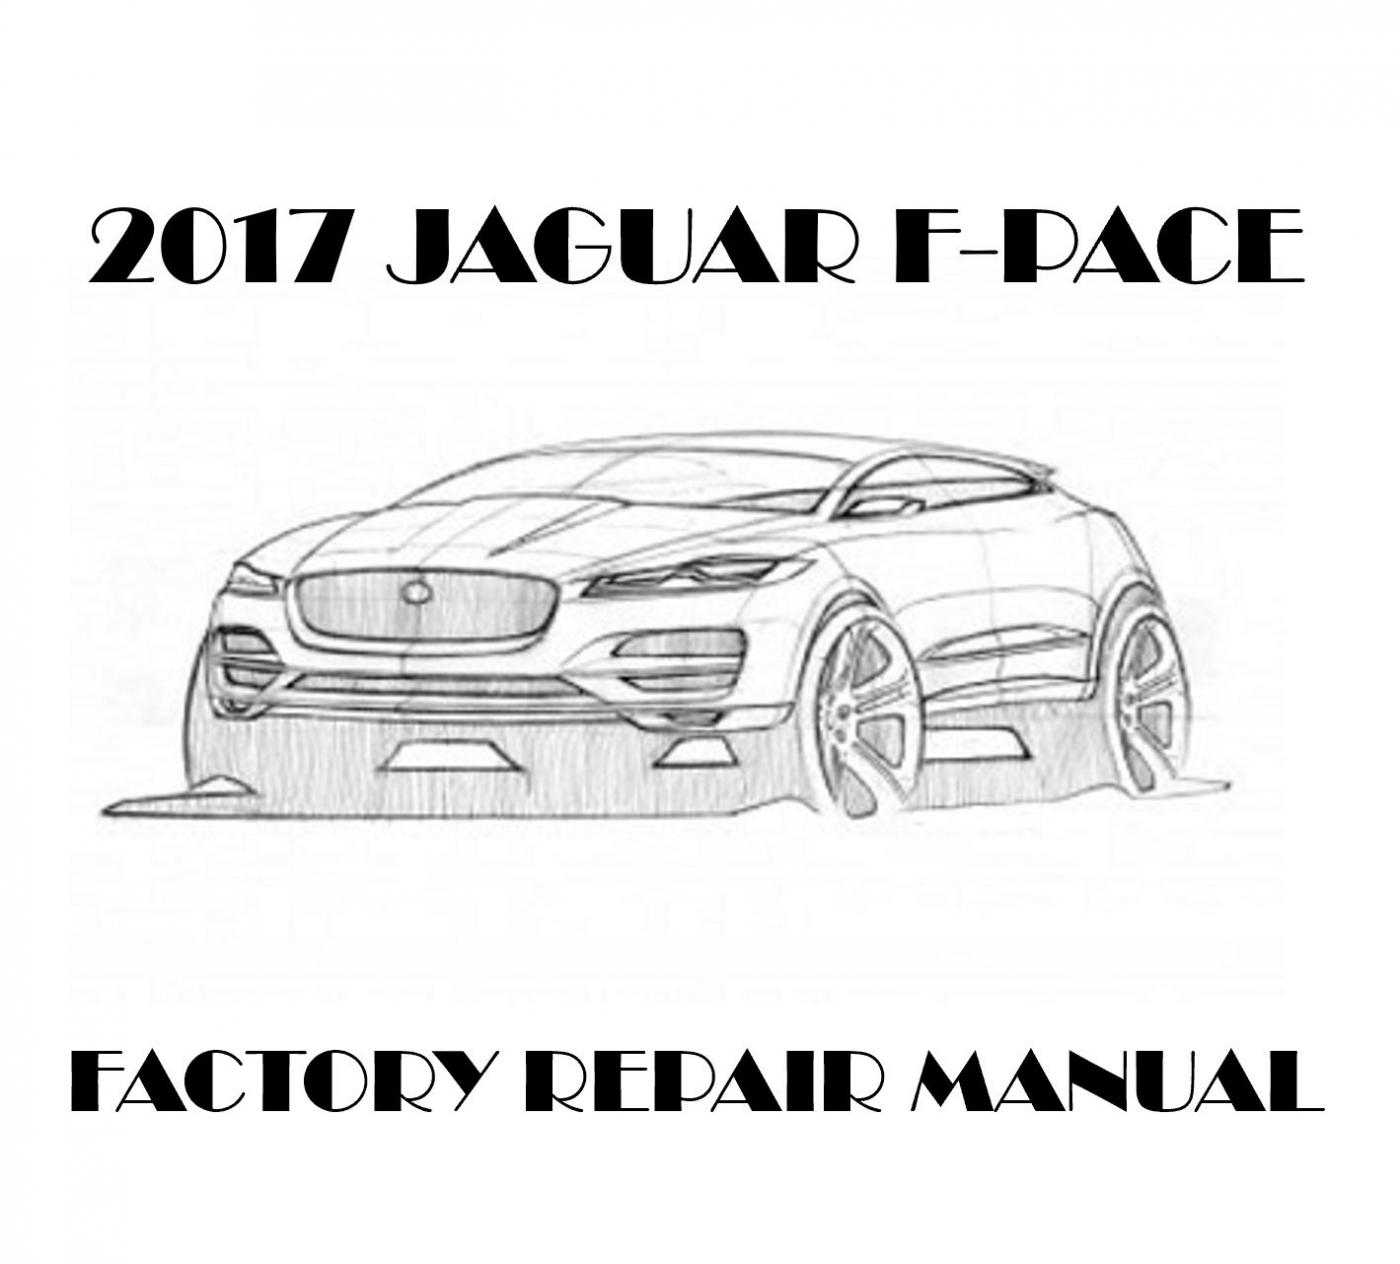 2017 Jaguar F-PACE repair manual